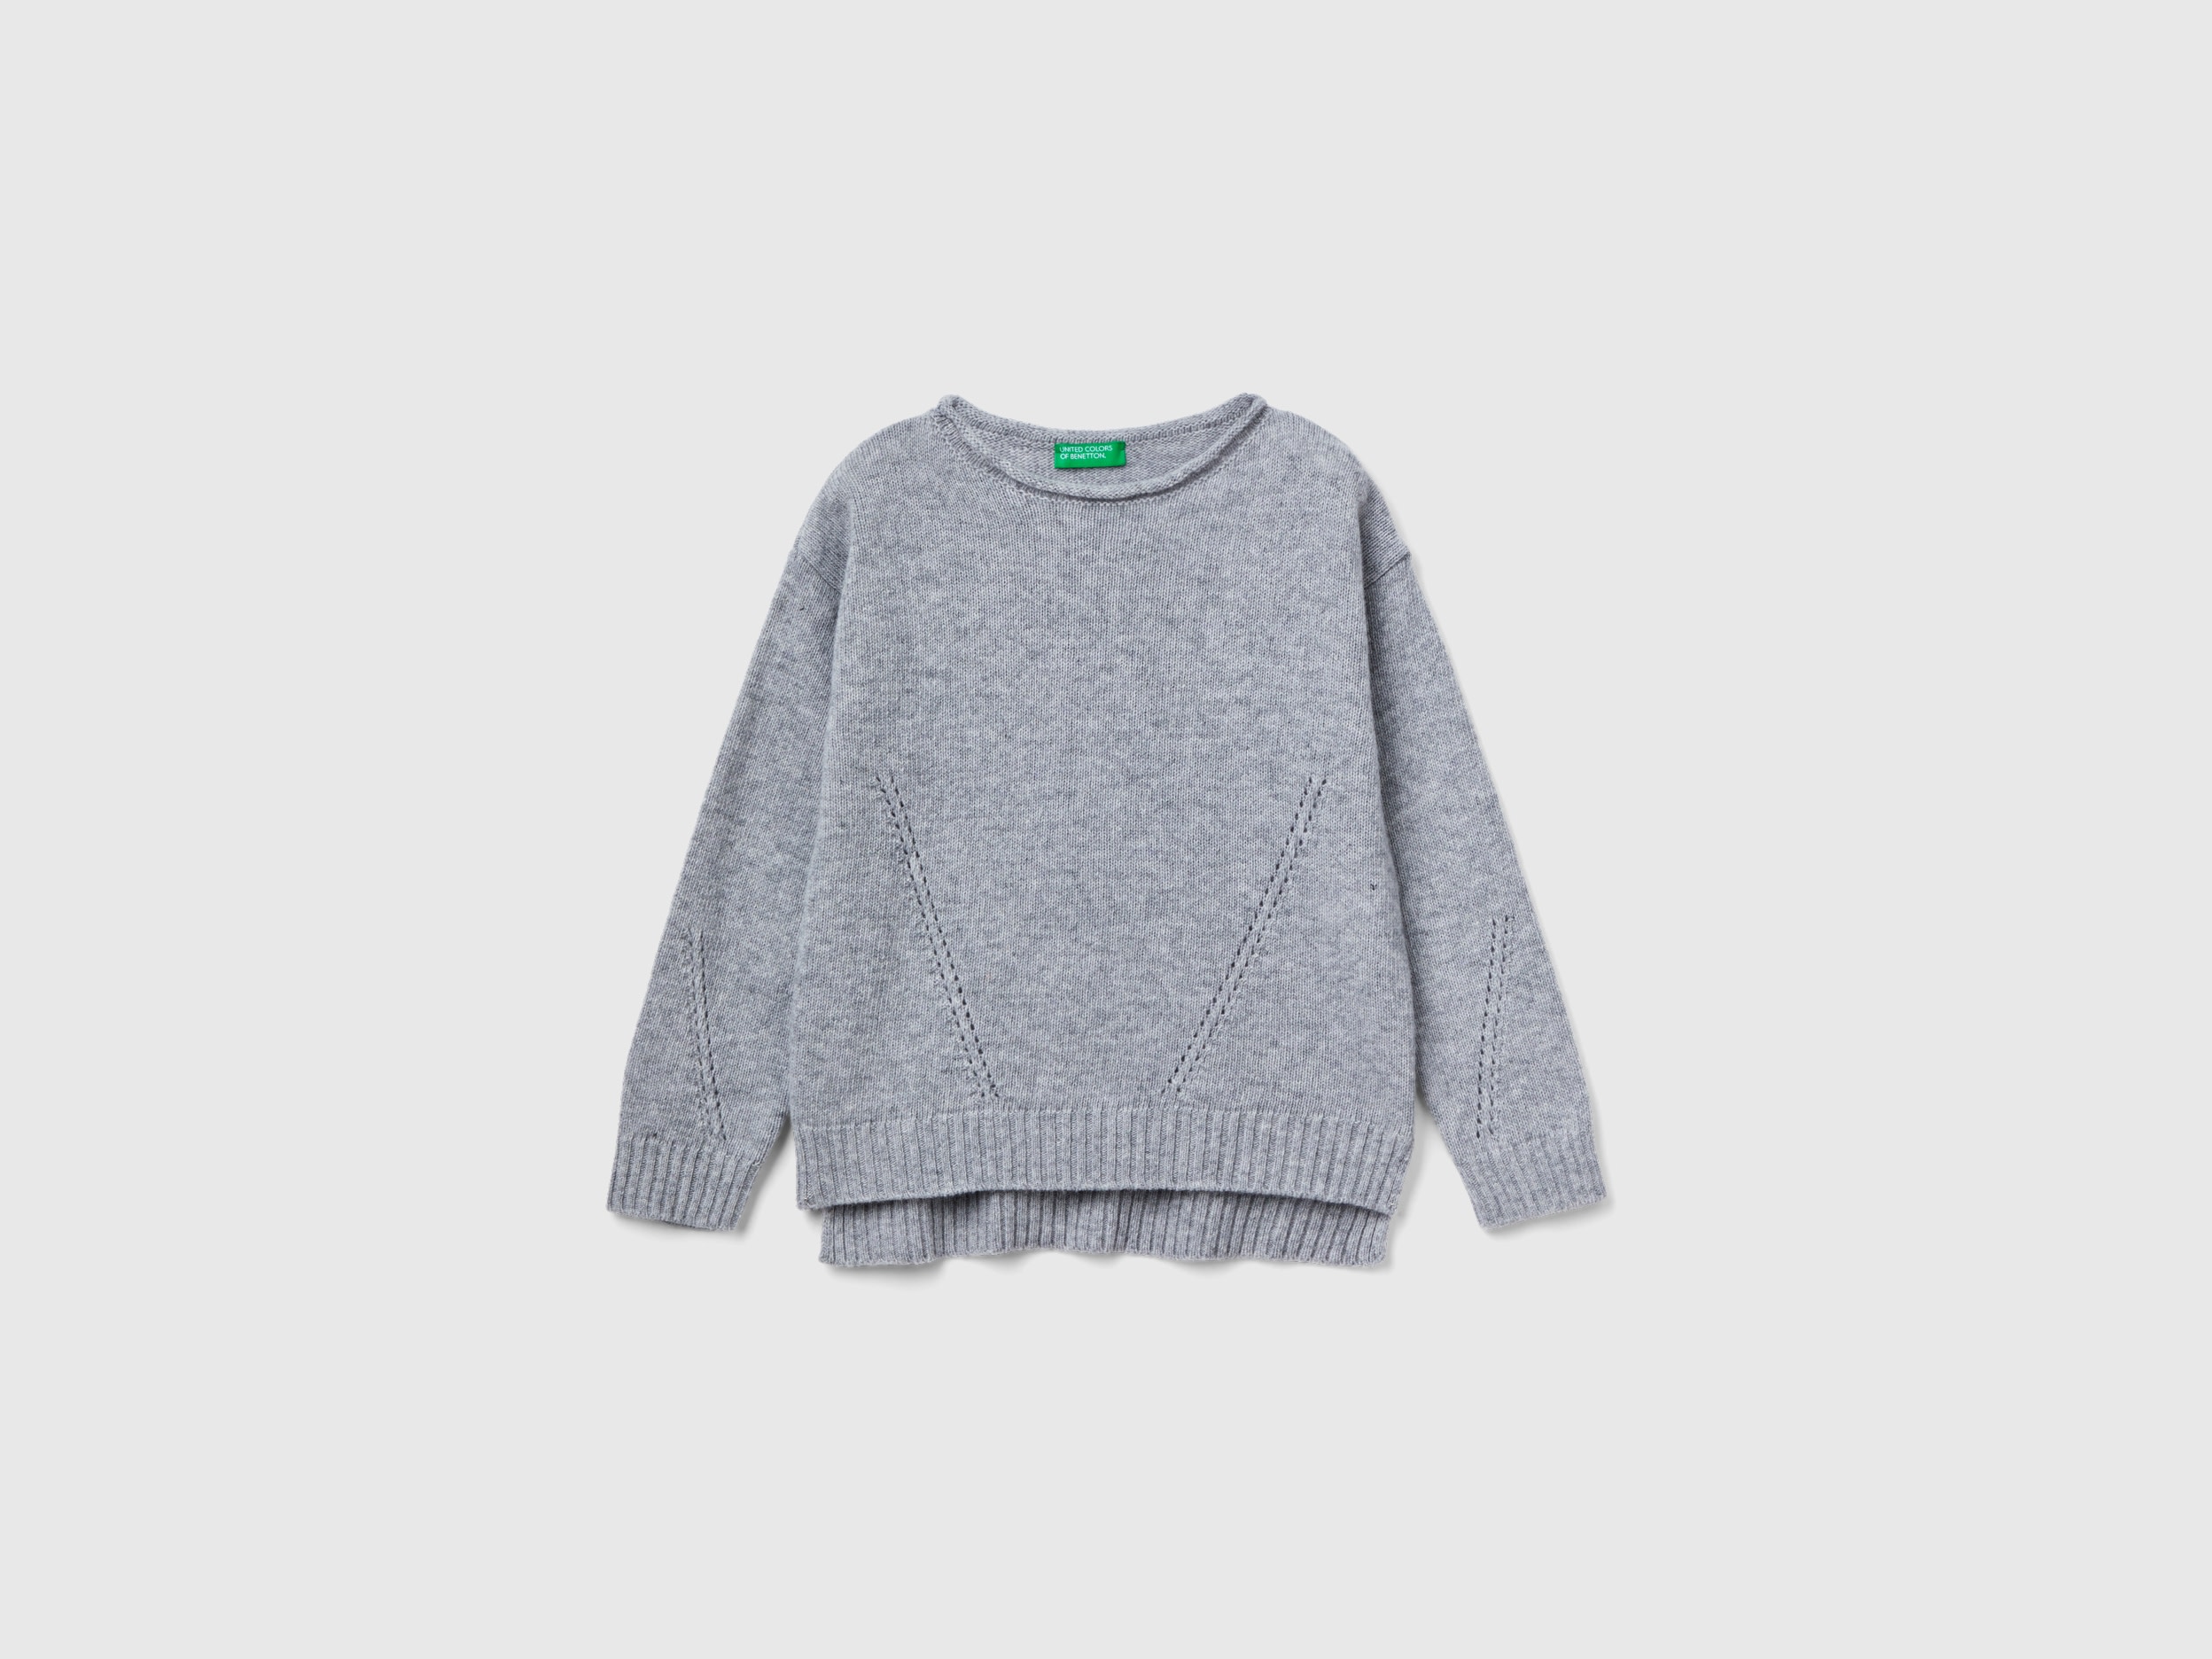 Benetton, Knit Sweater With Playful Stitching, size 2XL, Light Gray, Kids